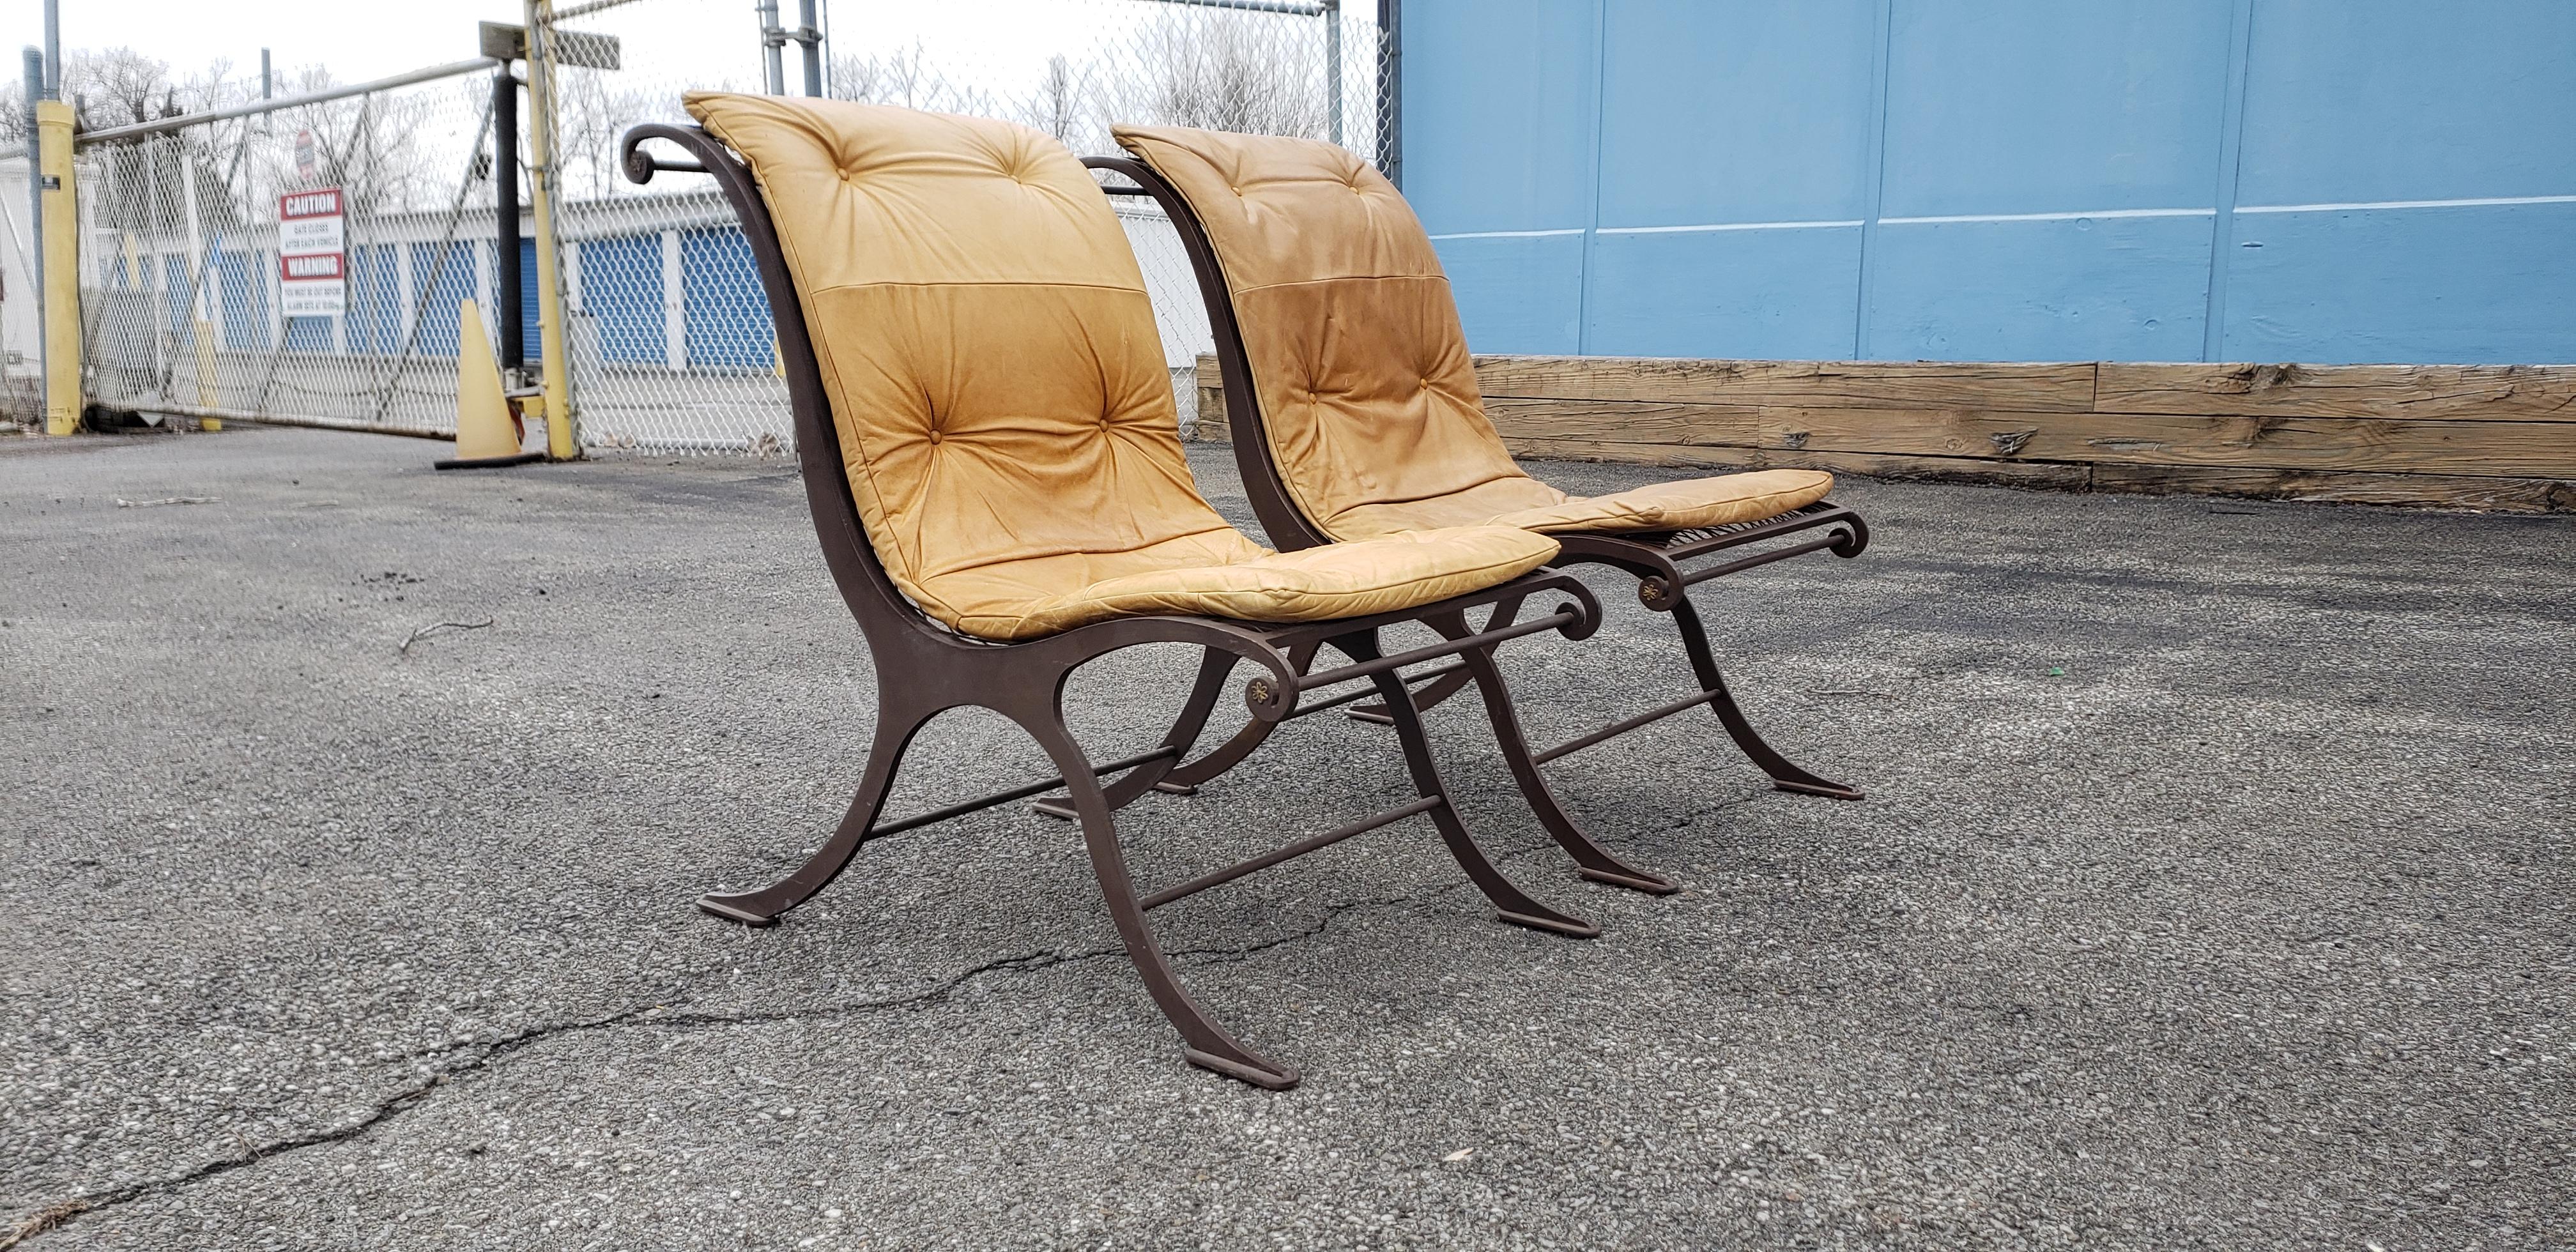 Belle paire de chaises en fer et en cuir faites à la main. De bonne taille et très confortable.
Le cuir a une très belle patine. Elles sont très confortables et élégantes.
 